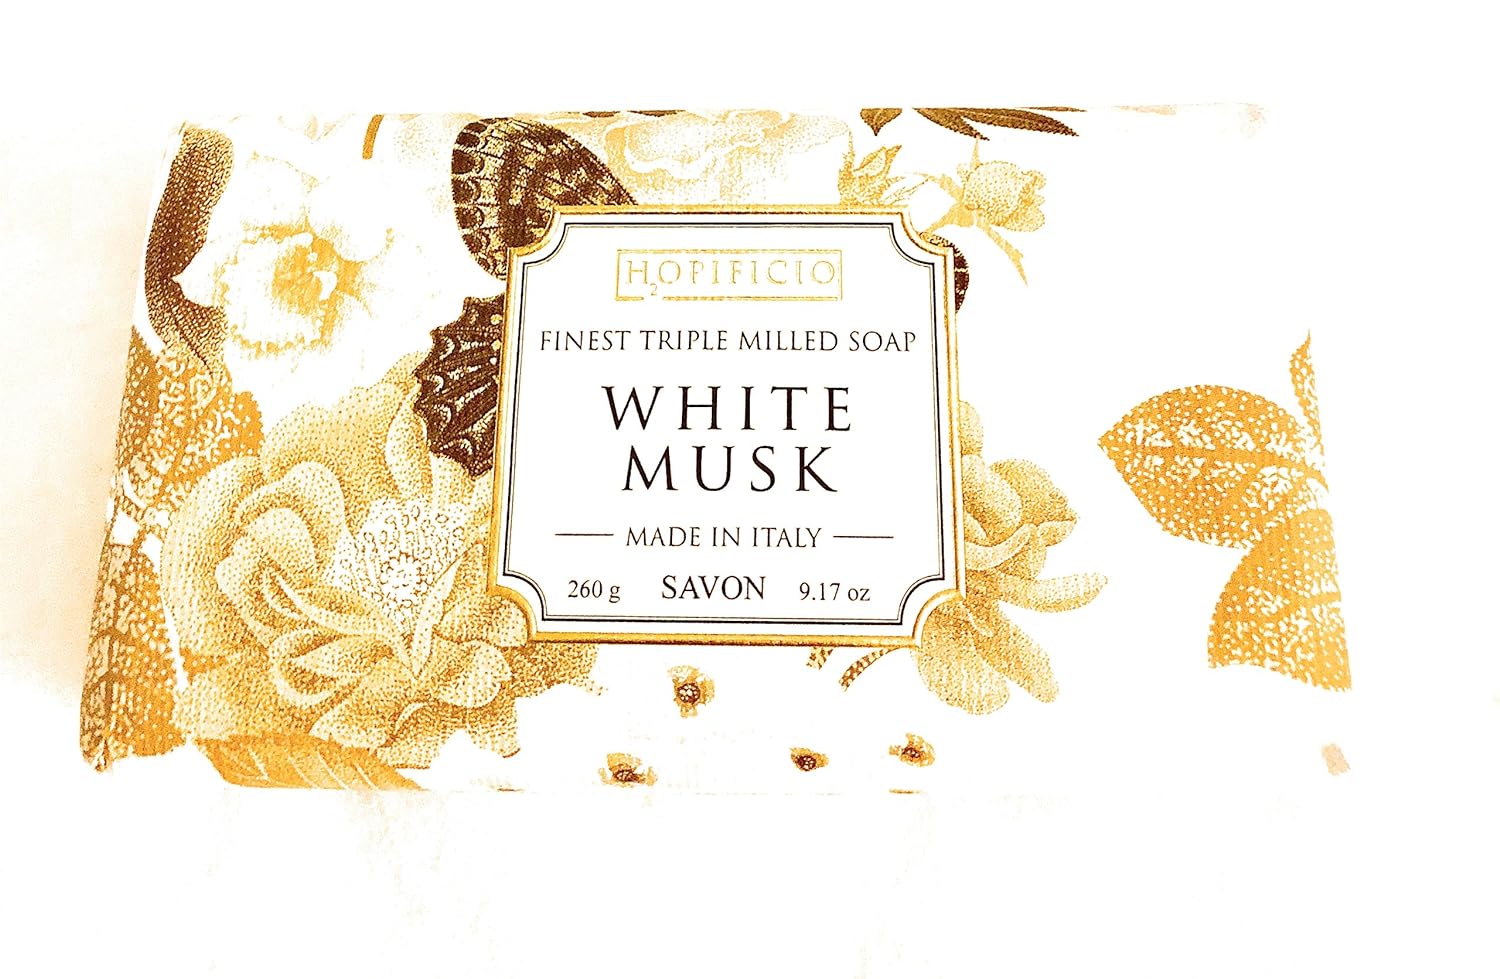 Esupli.com  Hopificio White Musk Triple Milled Italian Soap 